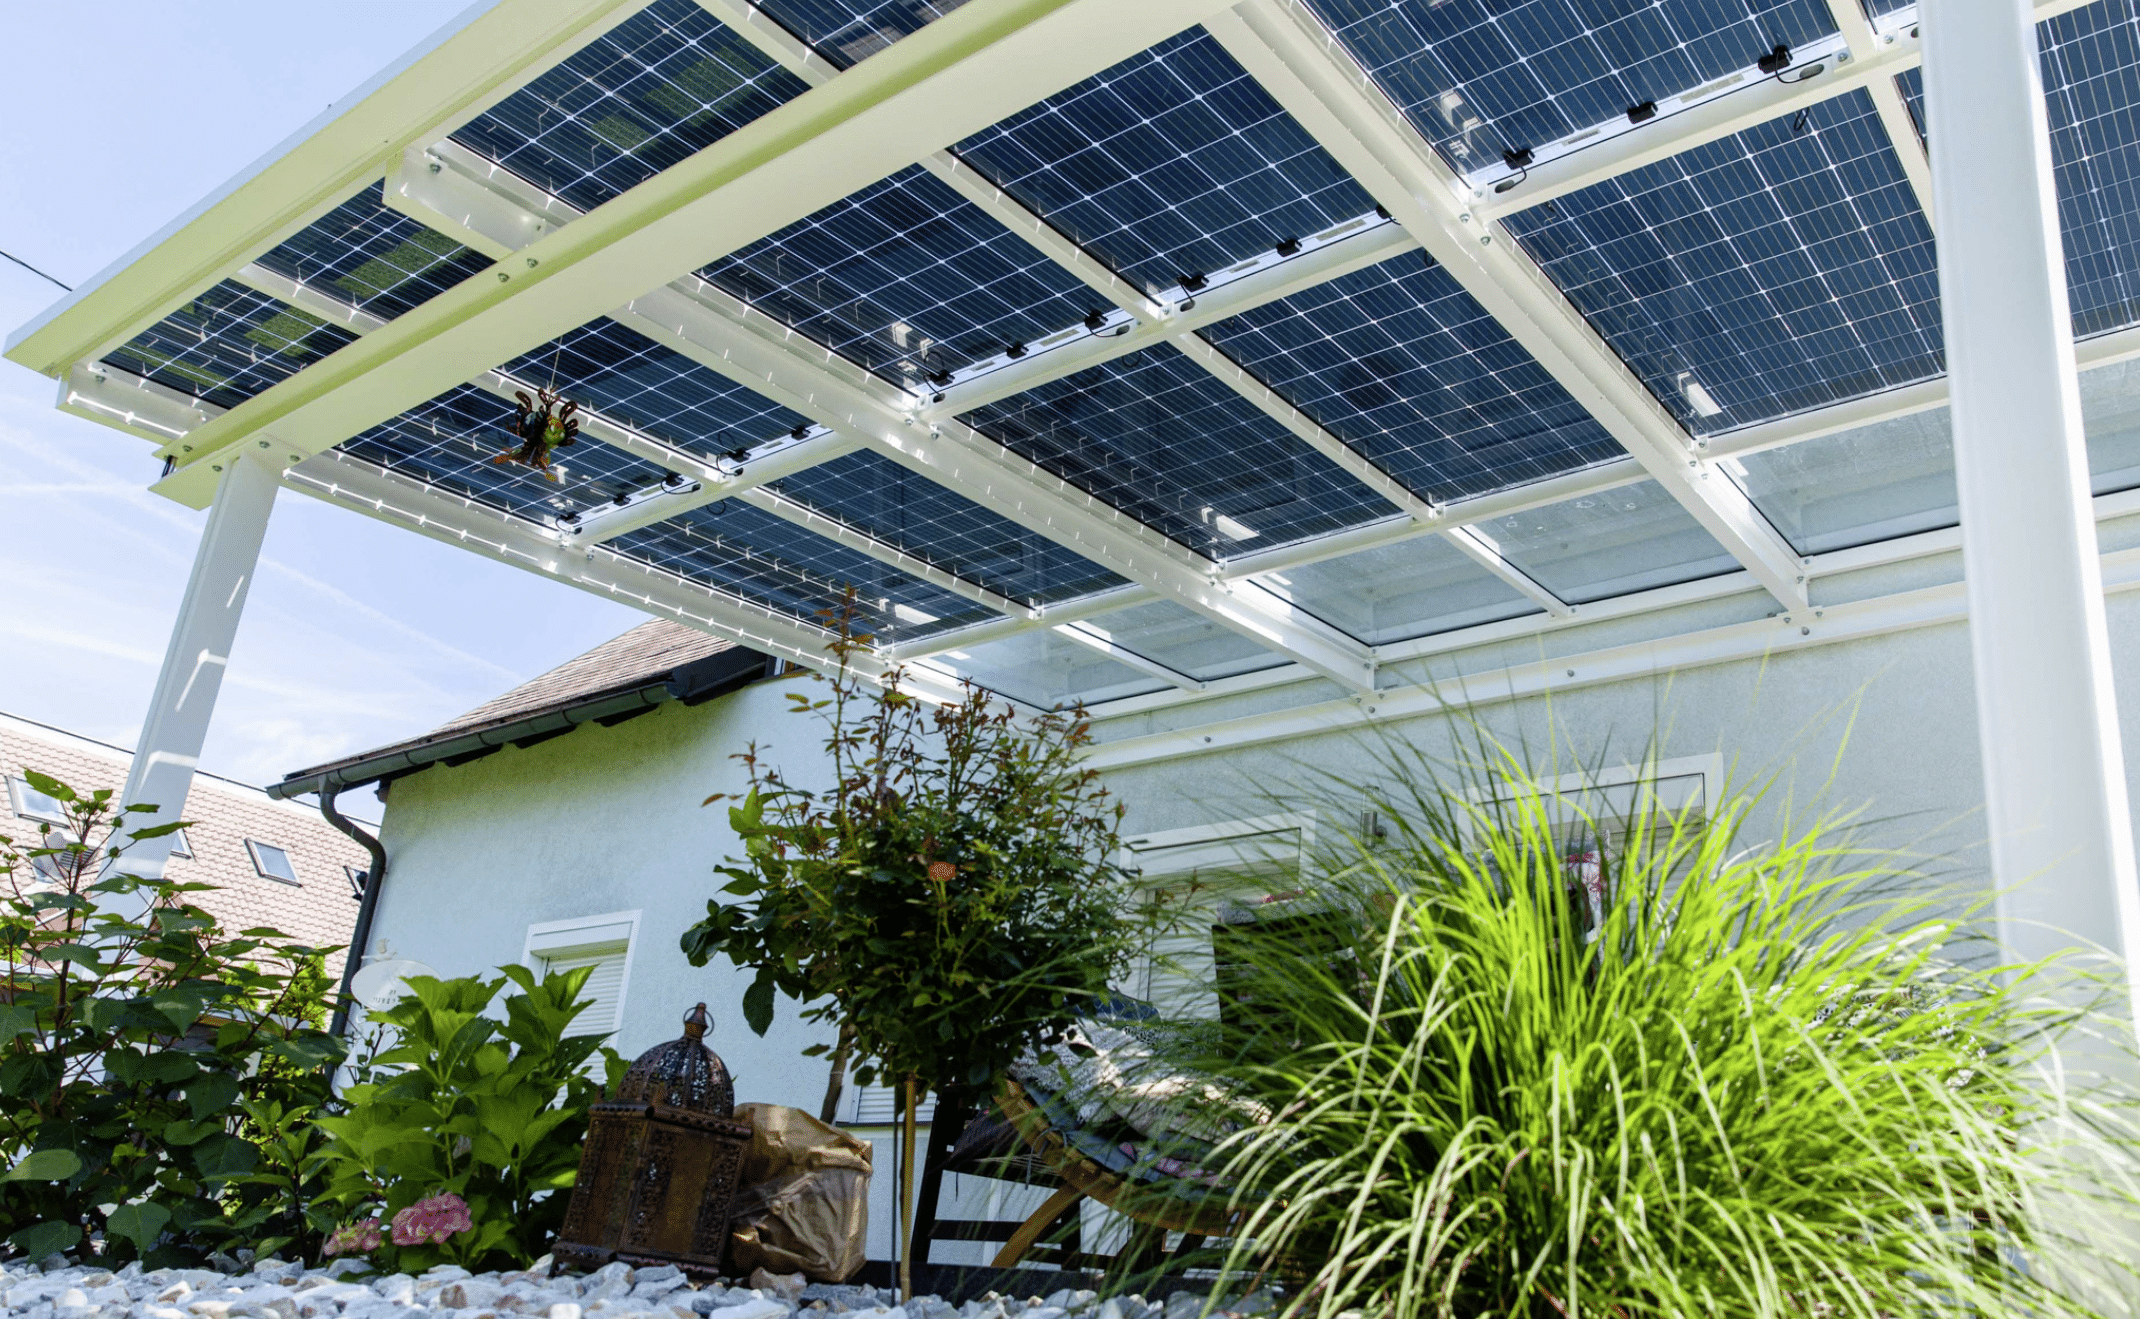 SONNENKRAFT zeigt eine Photovoltaikanlage, welche als Dach auf einem Carport dient,  um die Sonne den ganzen Tag einzufangen.